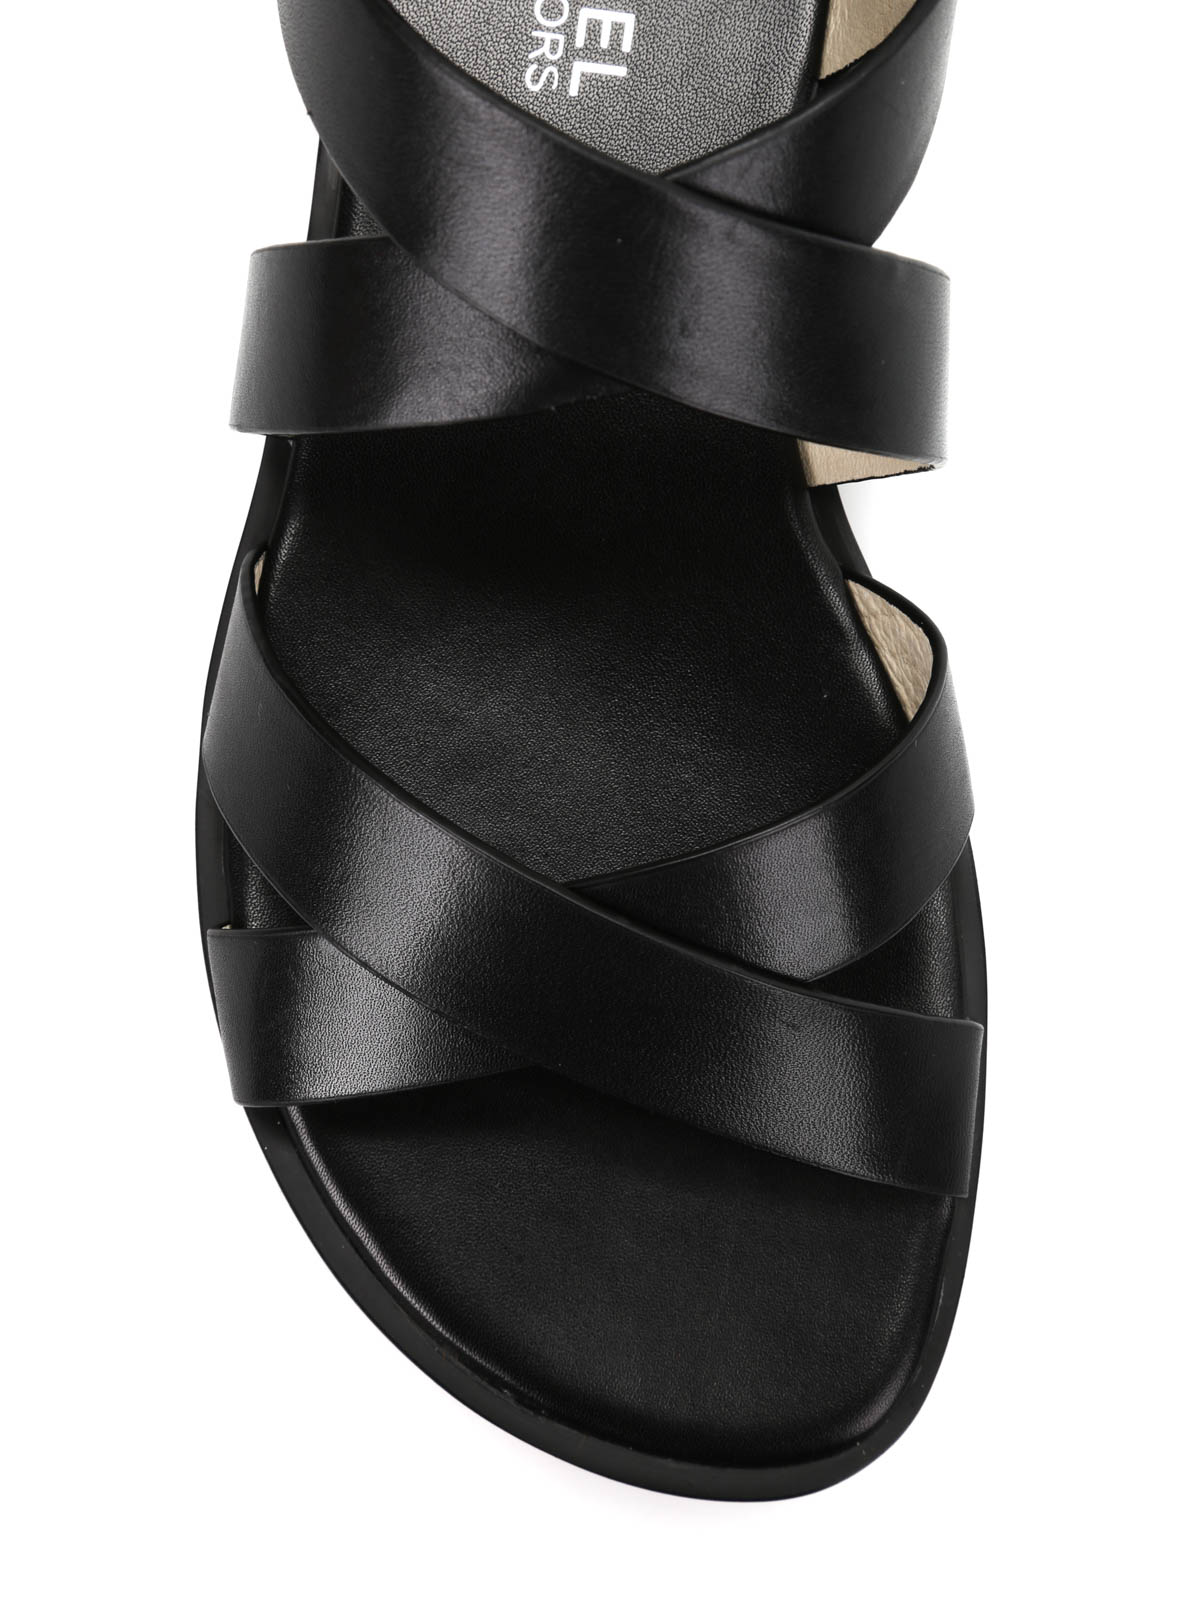 Sandals Michael Kors - Darby Gladiator sandals - 40R6DBFA4L001 